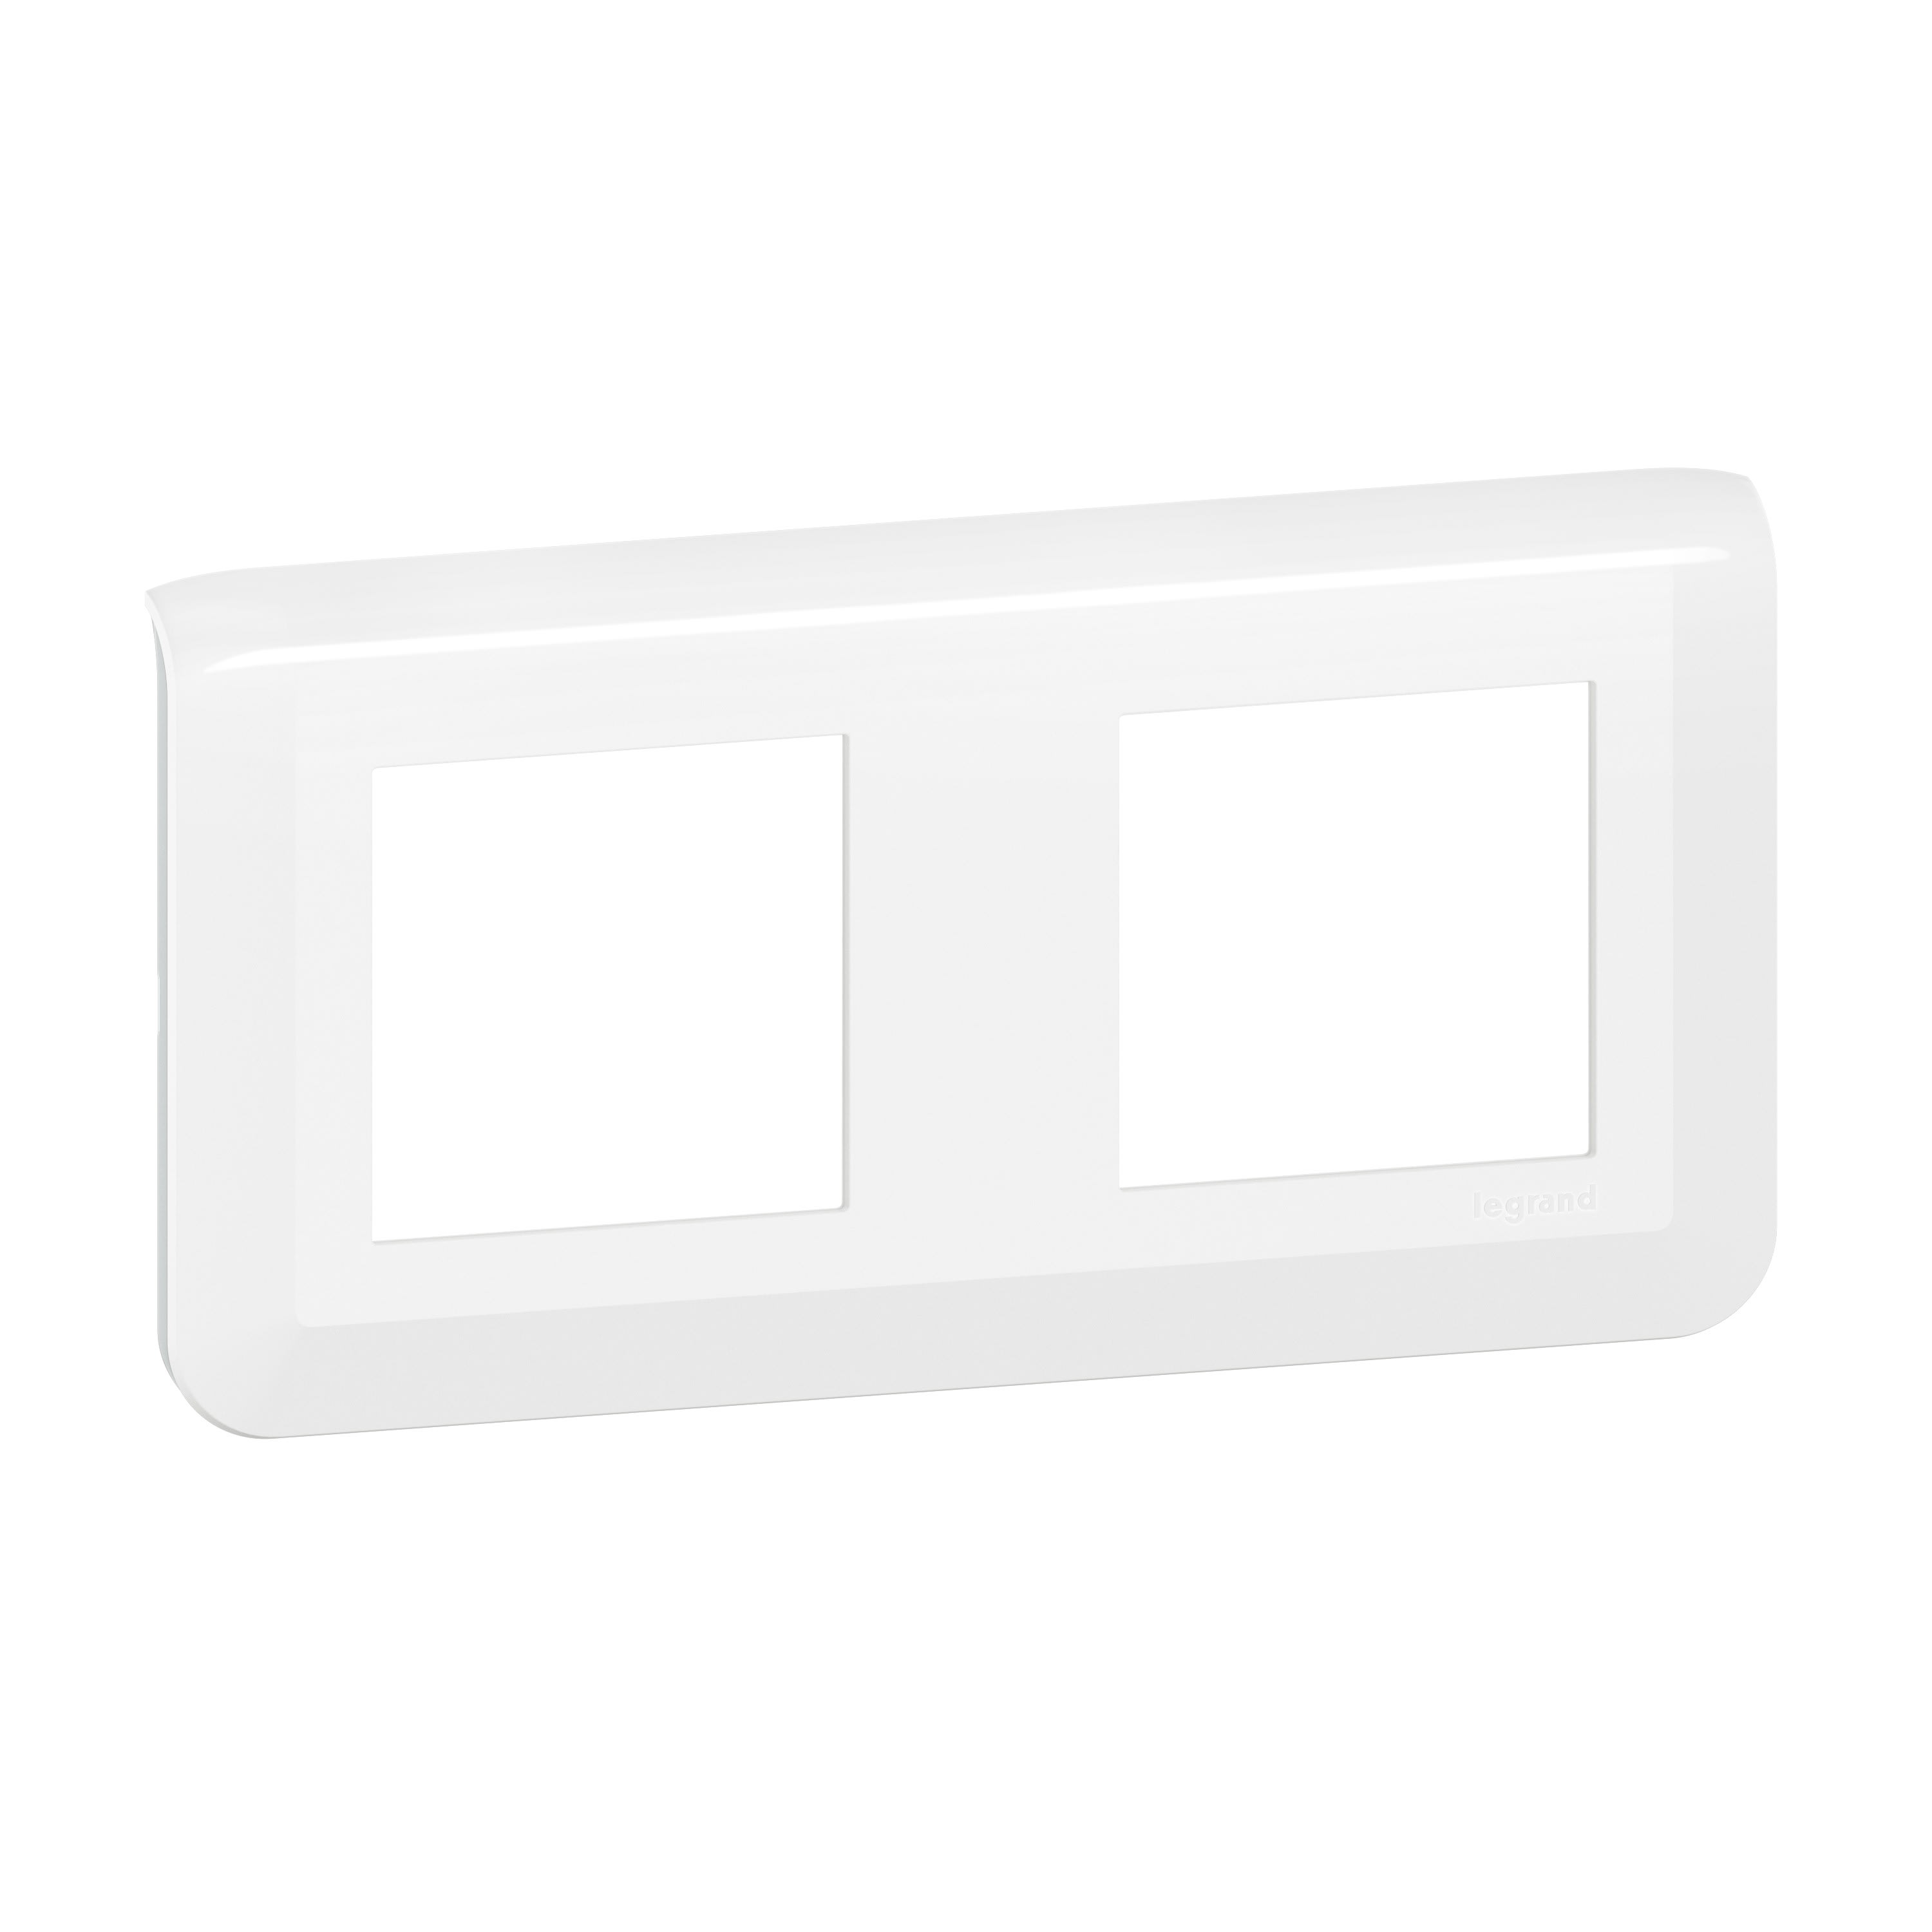 Legrand - Plaque de finition horizontale Mosaic pour 2x2 modules blanc